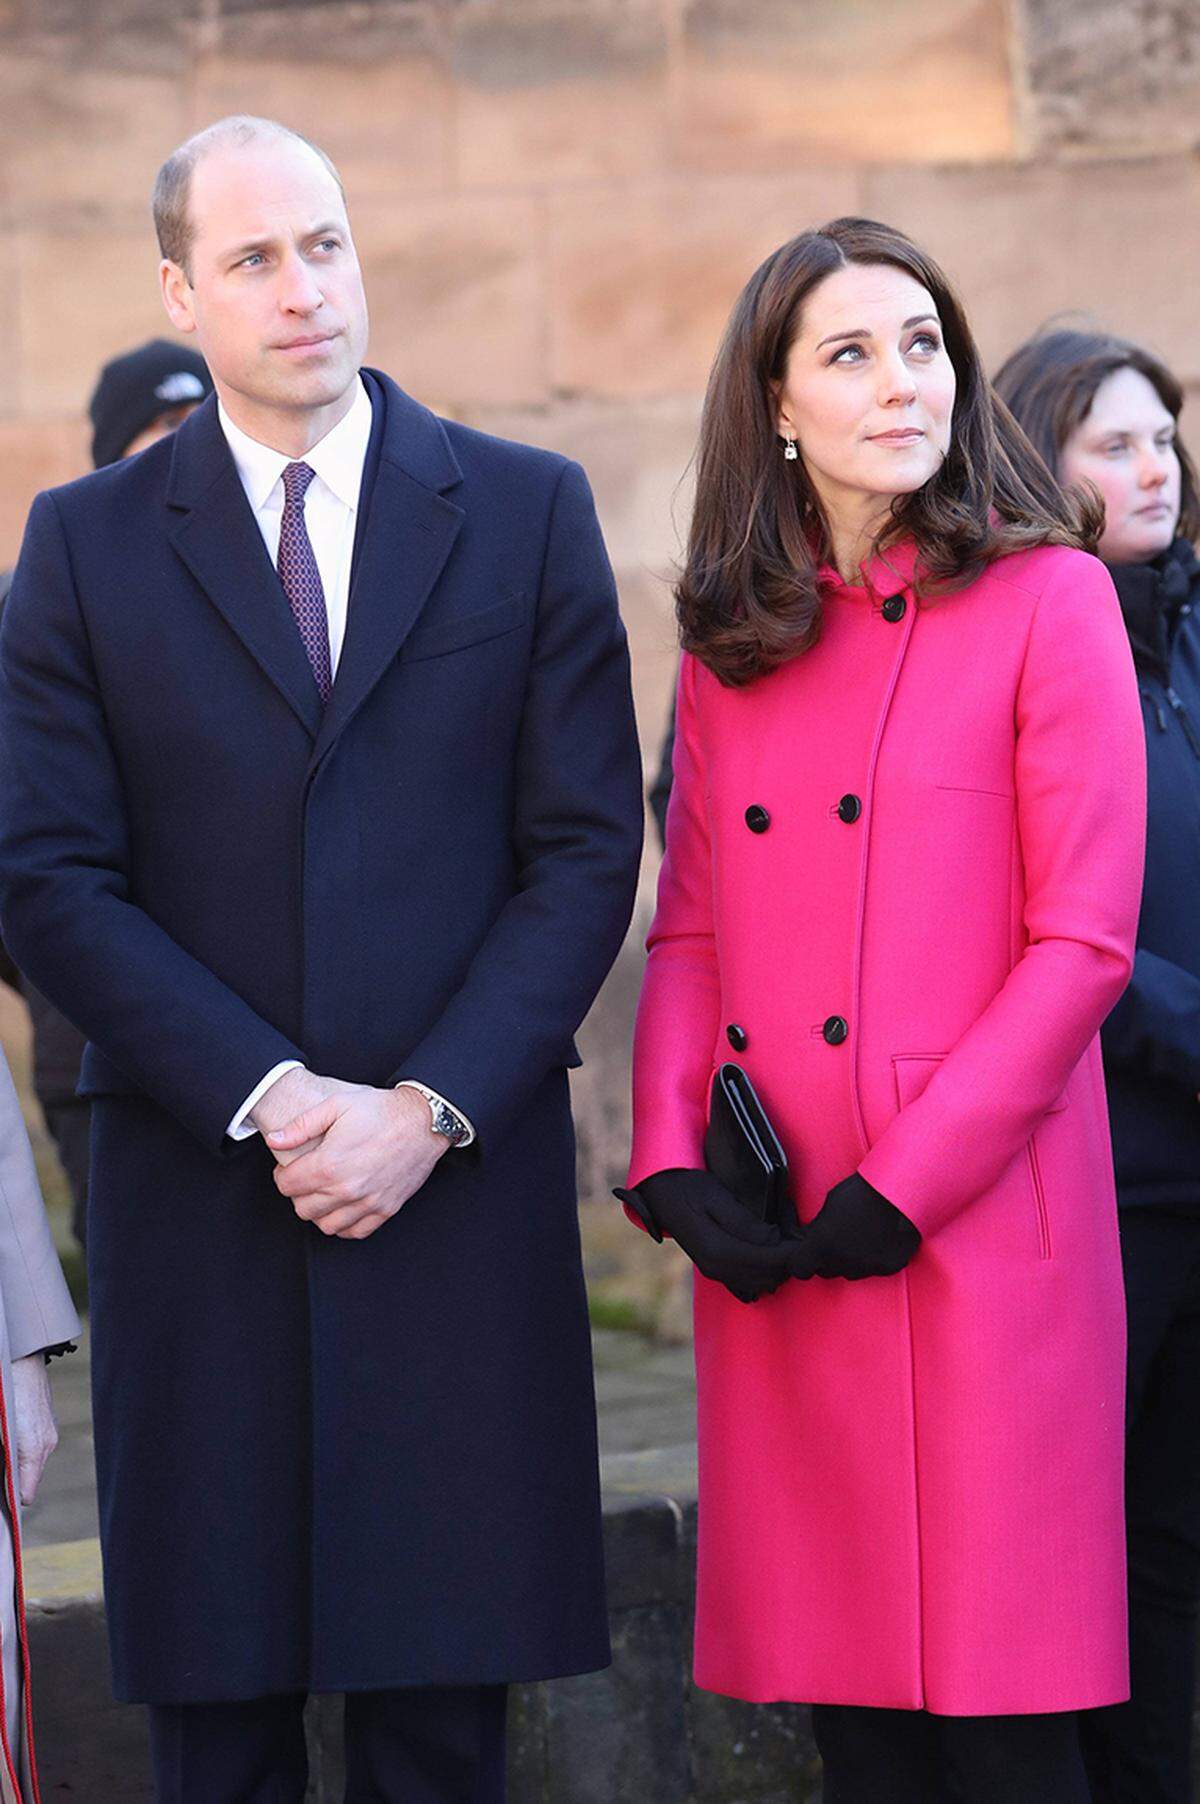 Der Herzog und die Herzogin von Cambridge überraschten mit der Nachricht die "Royal Watcher" - immerhin hatten sich die letzten Mountbatten-Windsor-Generationen stets für nur zwei Kinder entschieden. Frischer Wind also für das britische Königshaus - bei der Namenswahl aber werden der künftige König und seine Königin wohl traditionell bleiben.